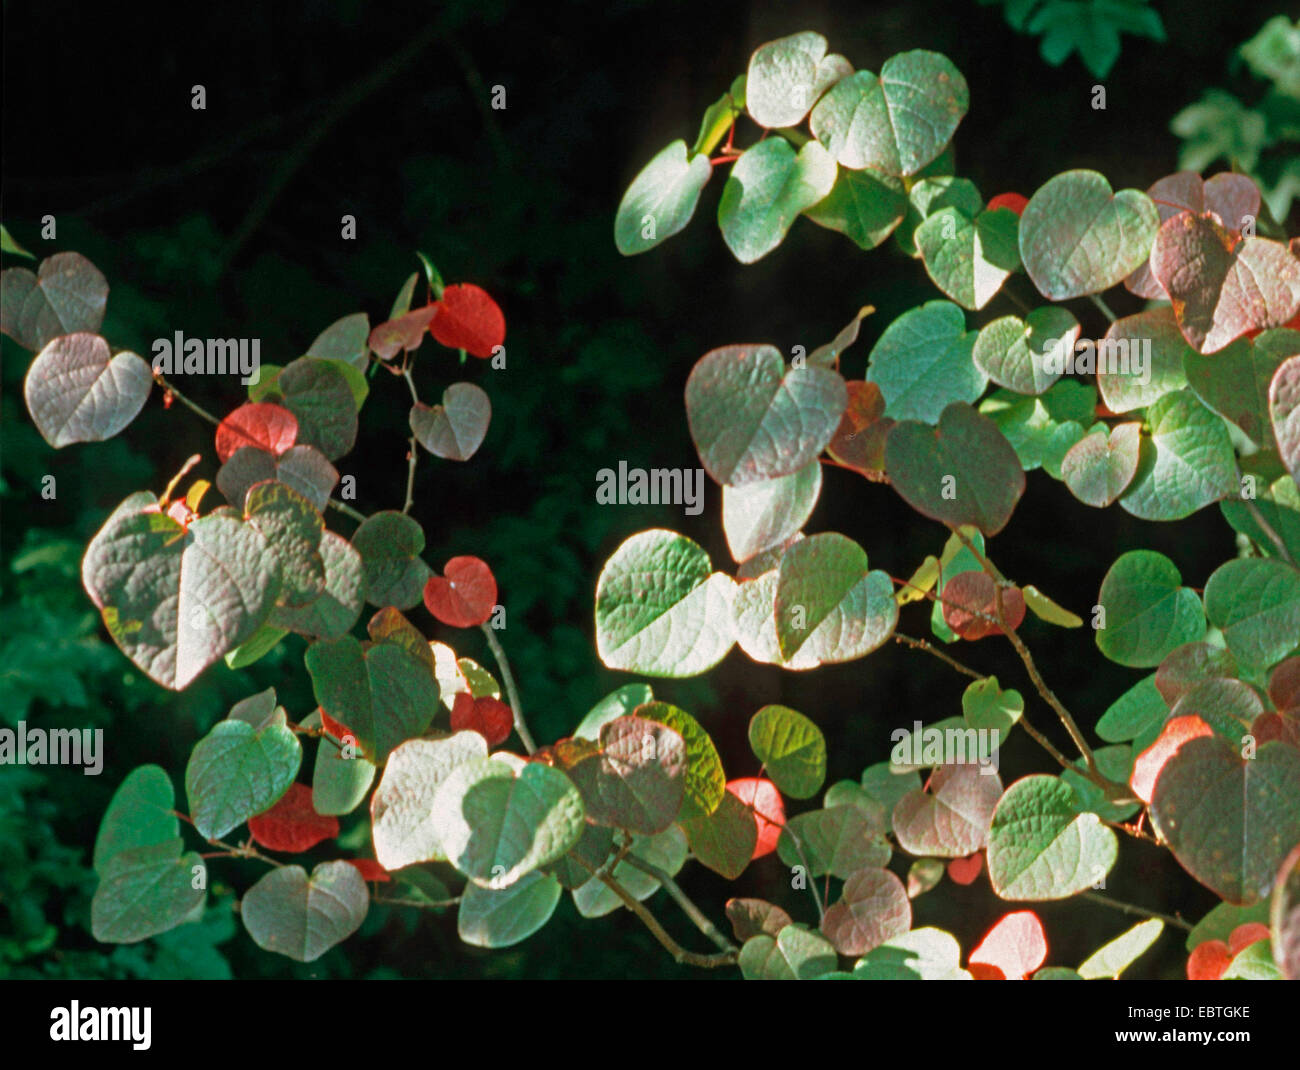 Disanthus (Disanthus cercidifolius), in autumn Stock Photo